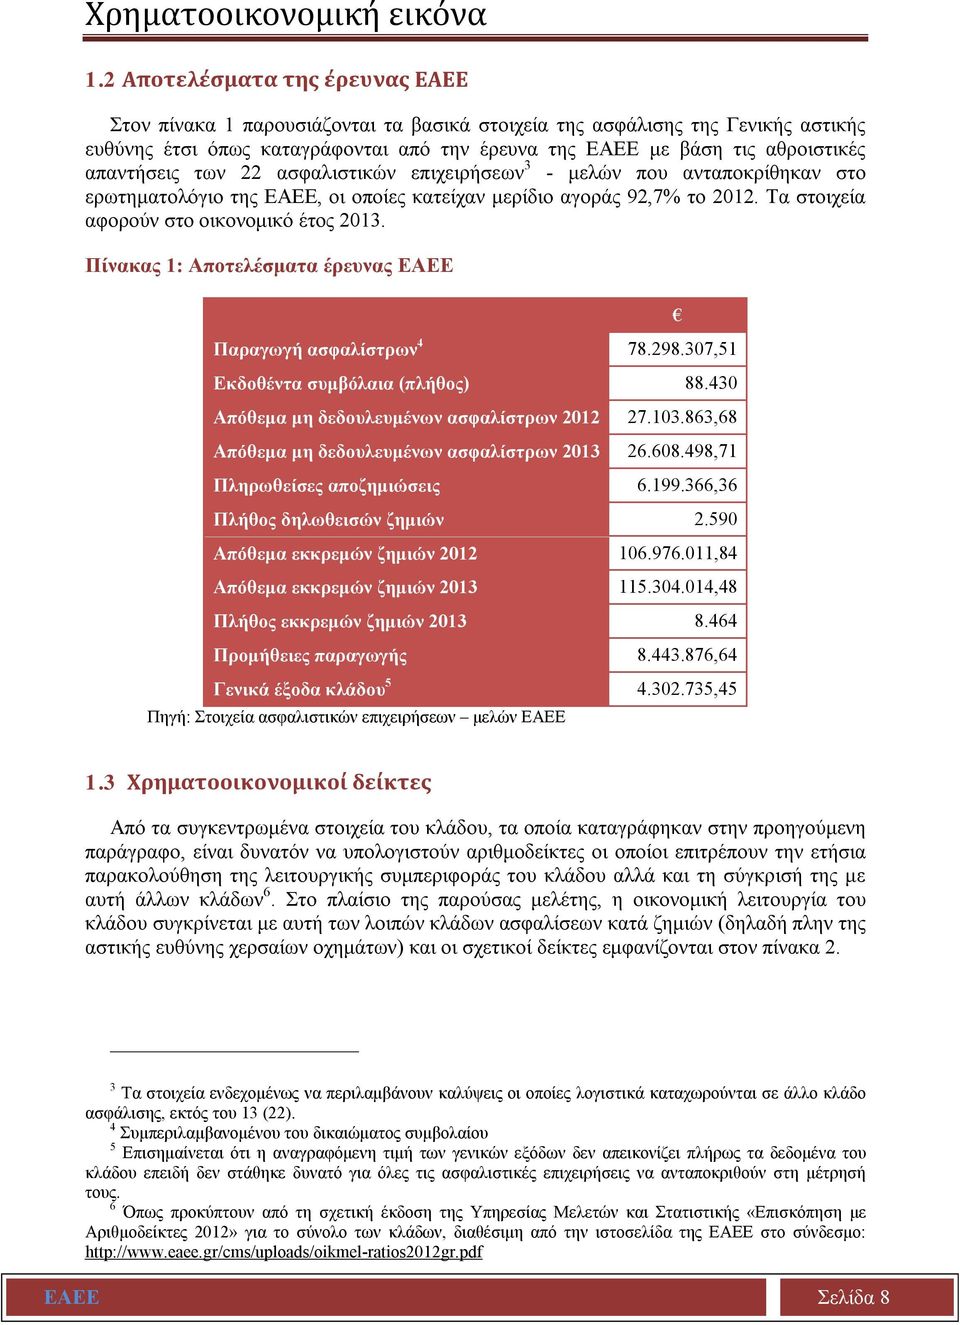 απαντήσεις των 22 ασφαλιστικών επιχειρήσεων 3 - μελών που ανταποκρίθηκαν στο ερωτηματολόγιο της ΕΑΕΕ, οι οποίες κατείχαν μερίδιο αγοράς 92,7% το 2012. Τα στοιχεία αφορούν στο οικονομικό έτος 2013.